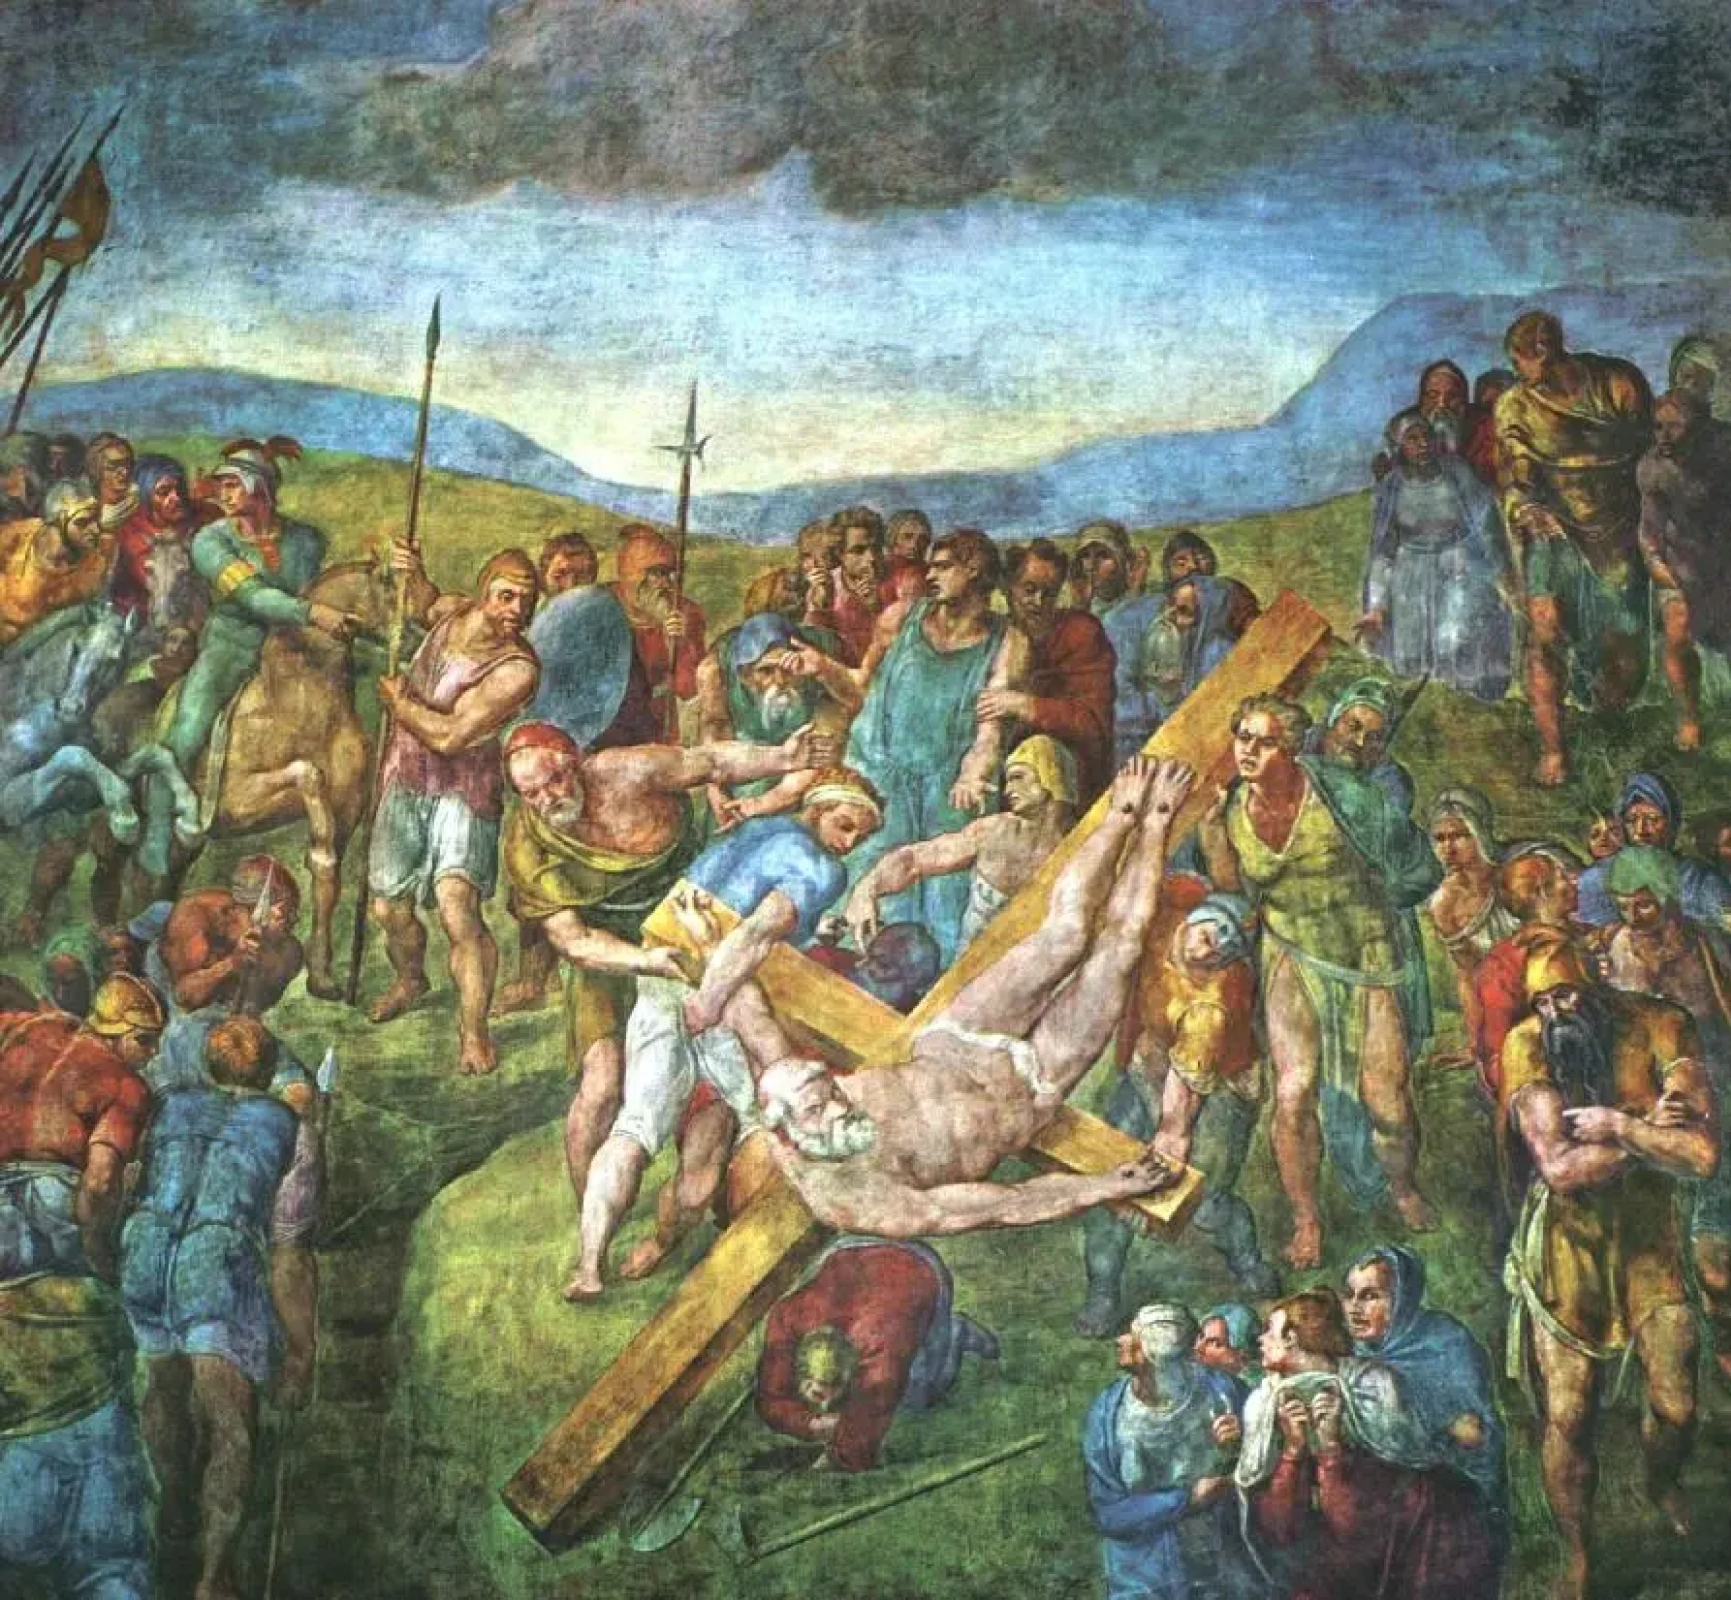 Распятие Святого Петра Микеланджело Буонарроти, 1550, 625×662 см Местонахождение: Капелла Паолина, 